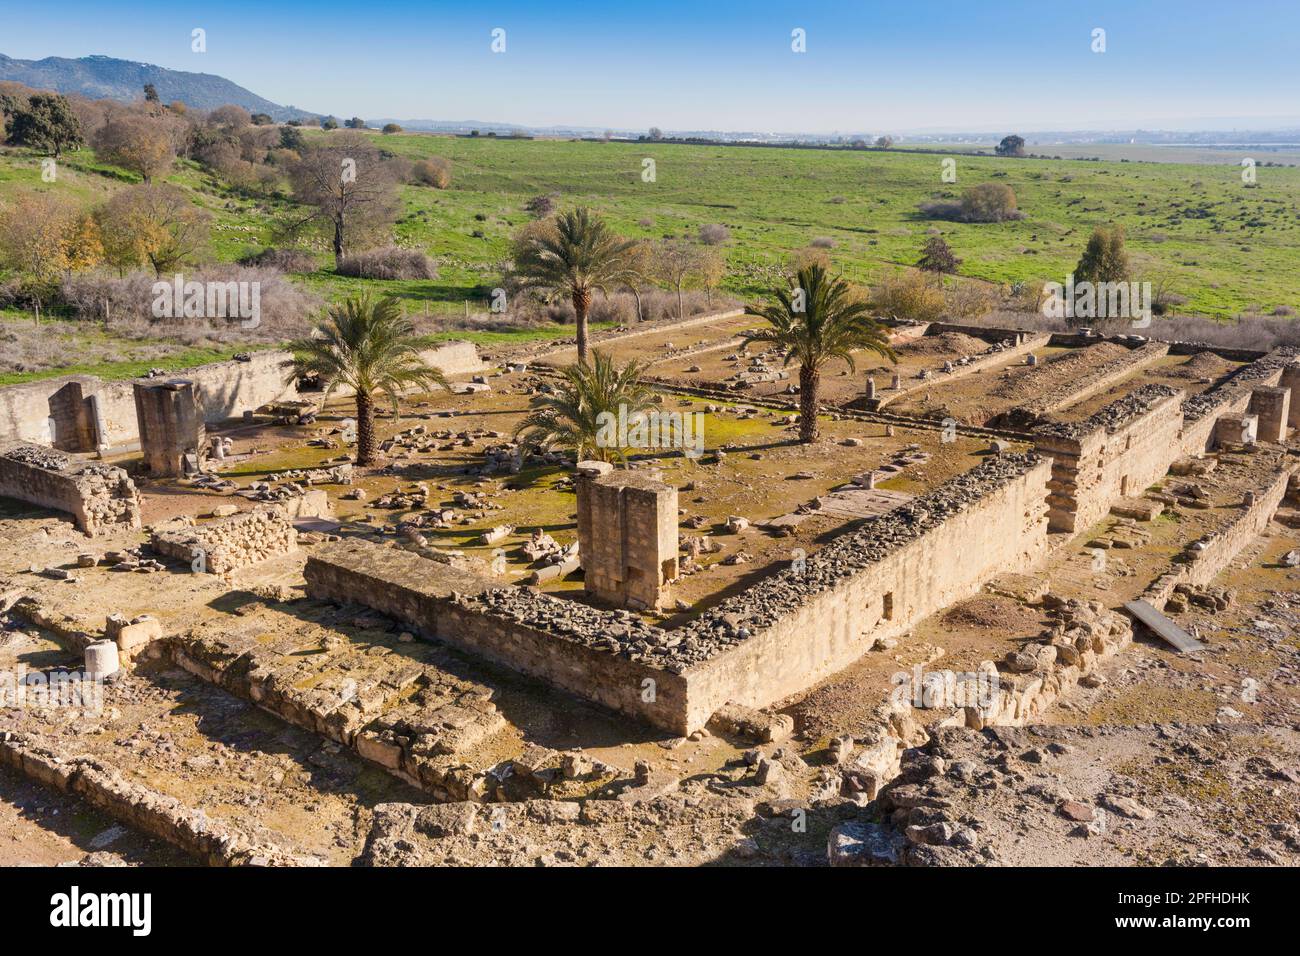 Ruinen der islamischen Festungsstadt Medina Azahara aus dem 10. Jahrhundert, auch bekannt als Madinat al-Zahra, Provinz Cordoba, Andalusien, Südspanien. Stockfoto